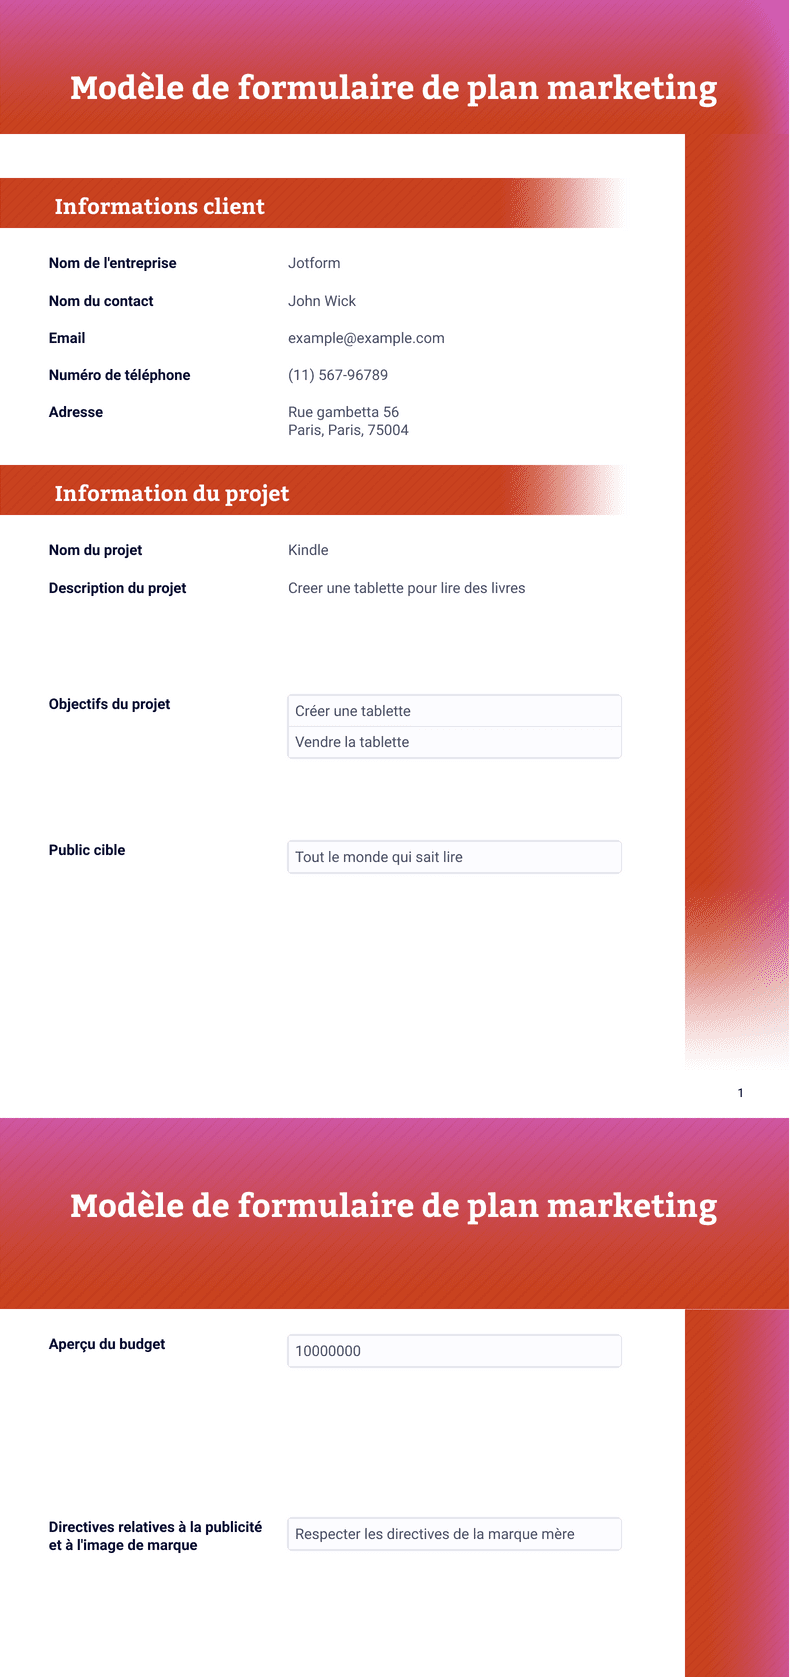 PDF Templates: Modèle de formulaire de plan marketing